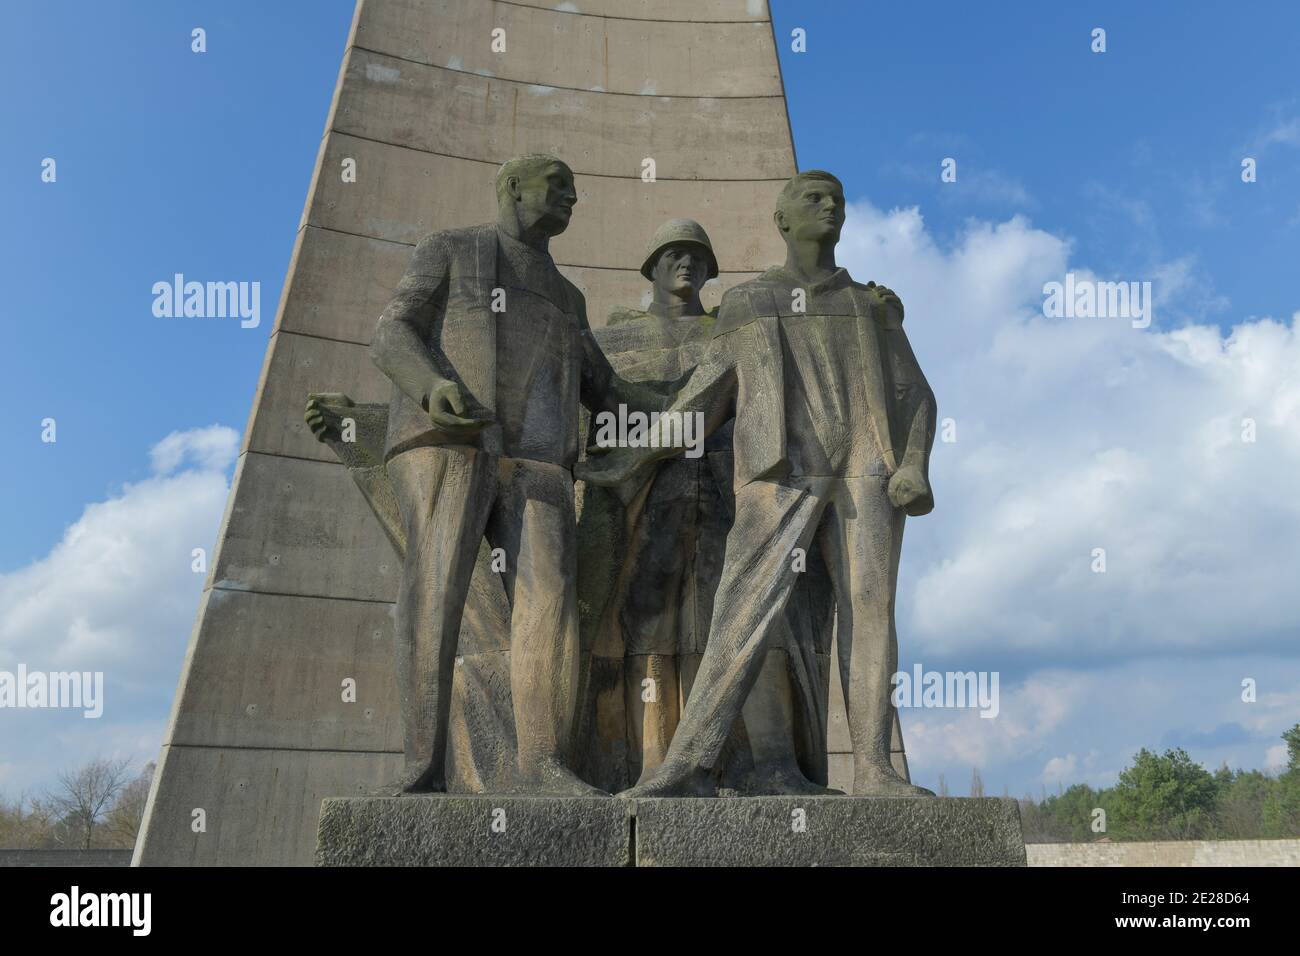 Plastikgruppe 'Befreiung' von Rene Graetz, nationale Mahn und Gedenkstätte der DDR von 1961, Gedenkstätte und Museum Konzentrationslager Sachsenhausen Banque D'Images